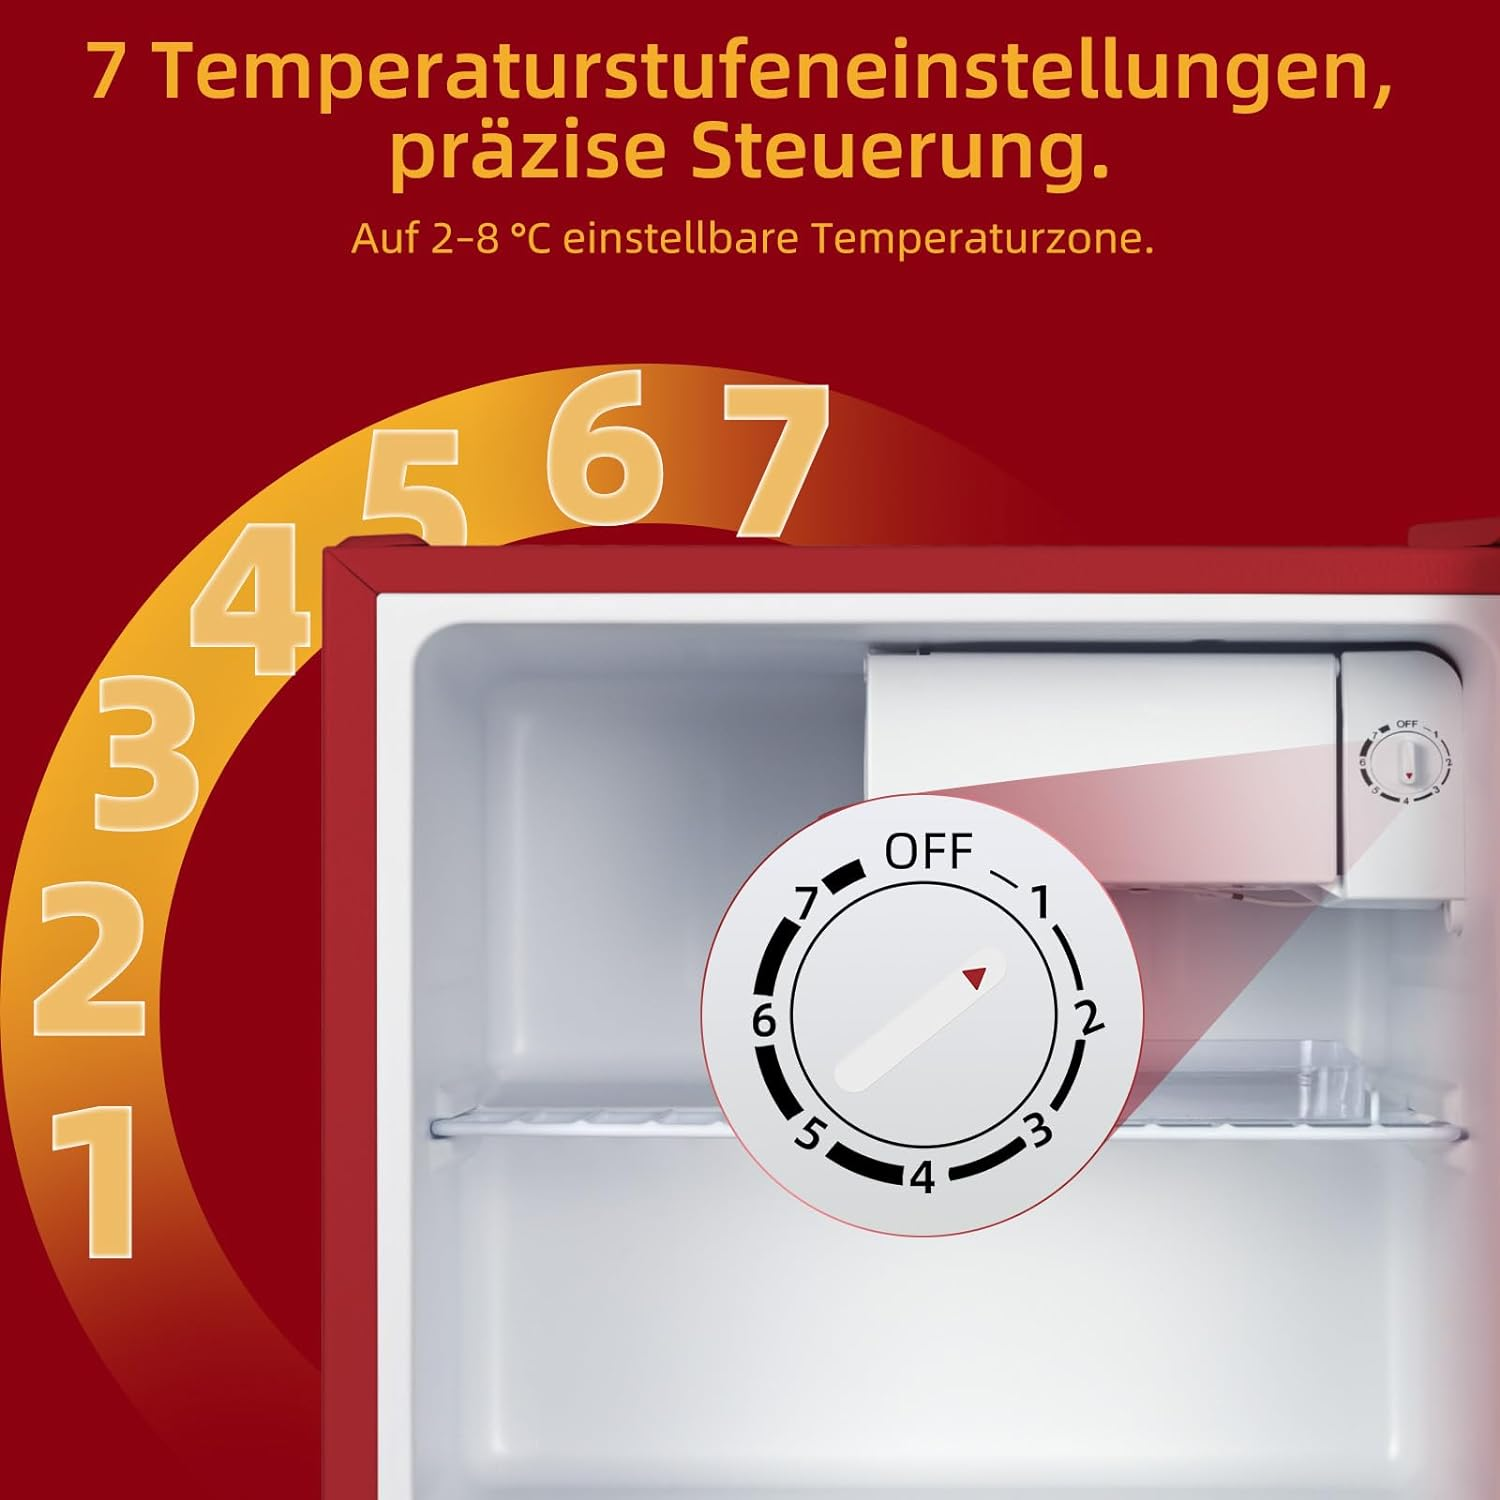 Kühlschrank mm 496 hoch, Rot) (E, CHIQ CSD46D4RE